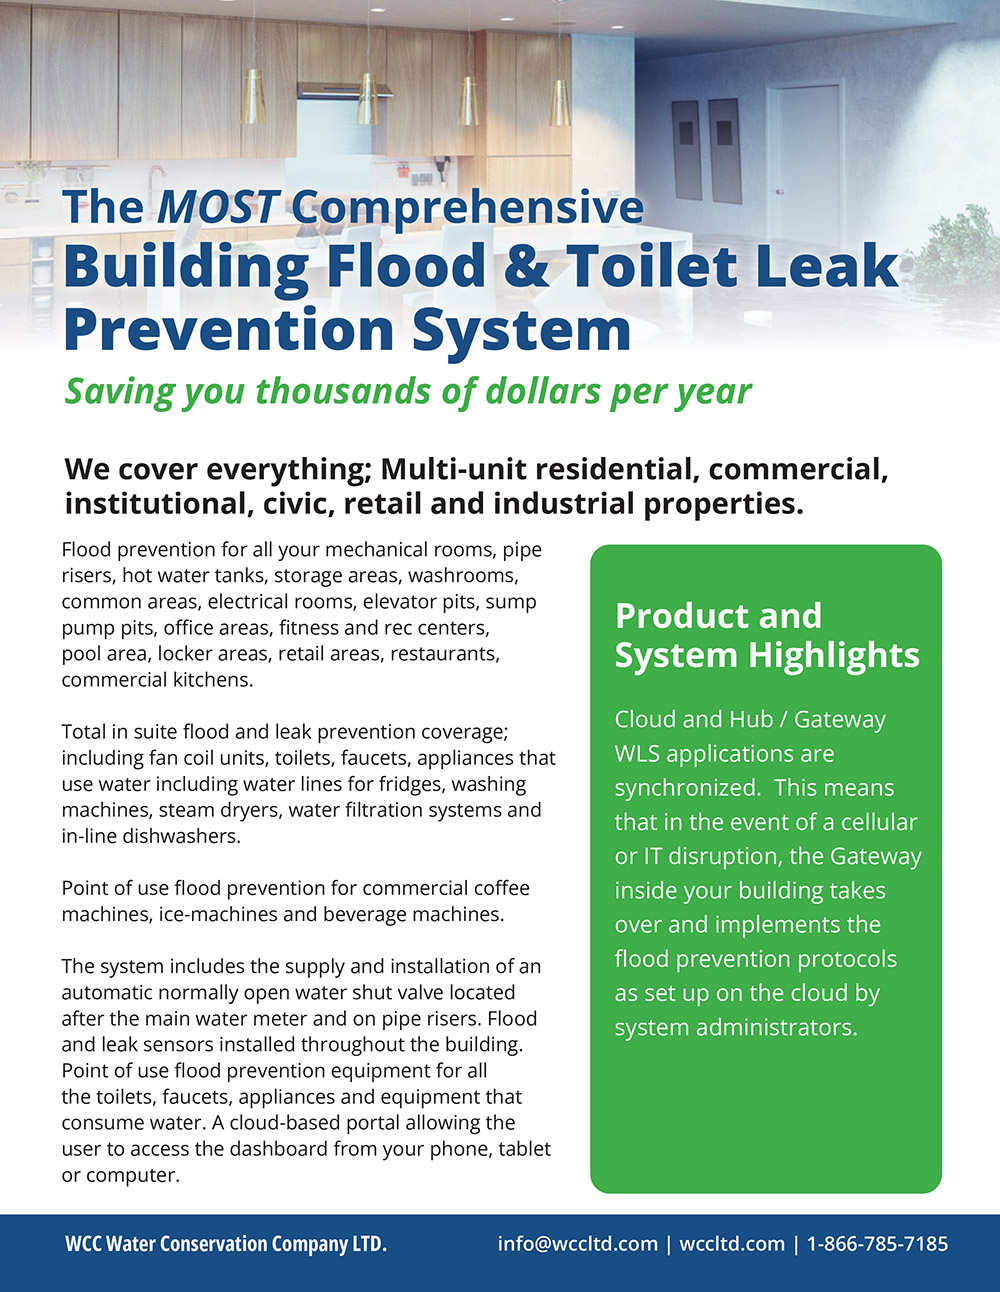 Flood & Toilet Leak Prevention